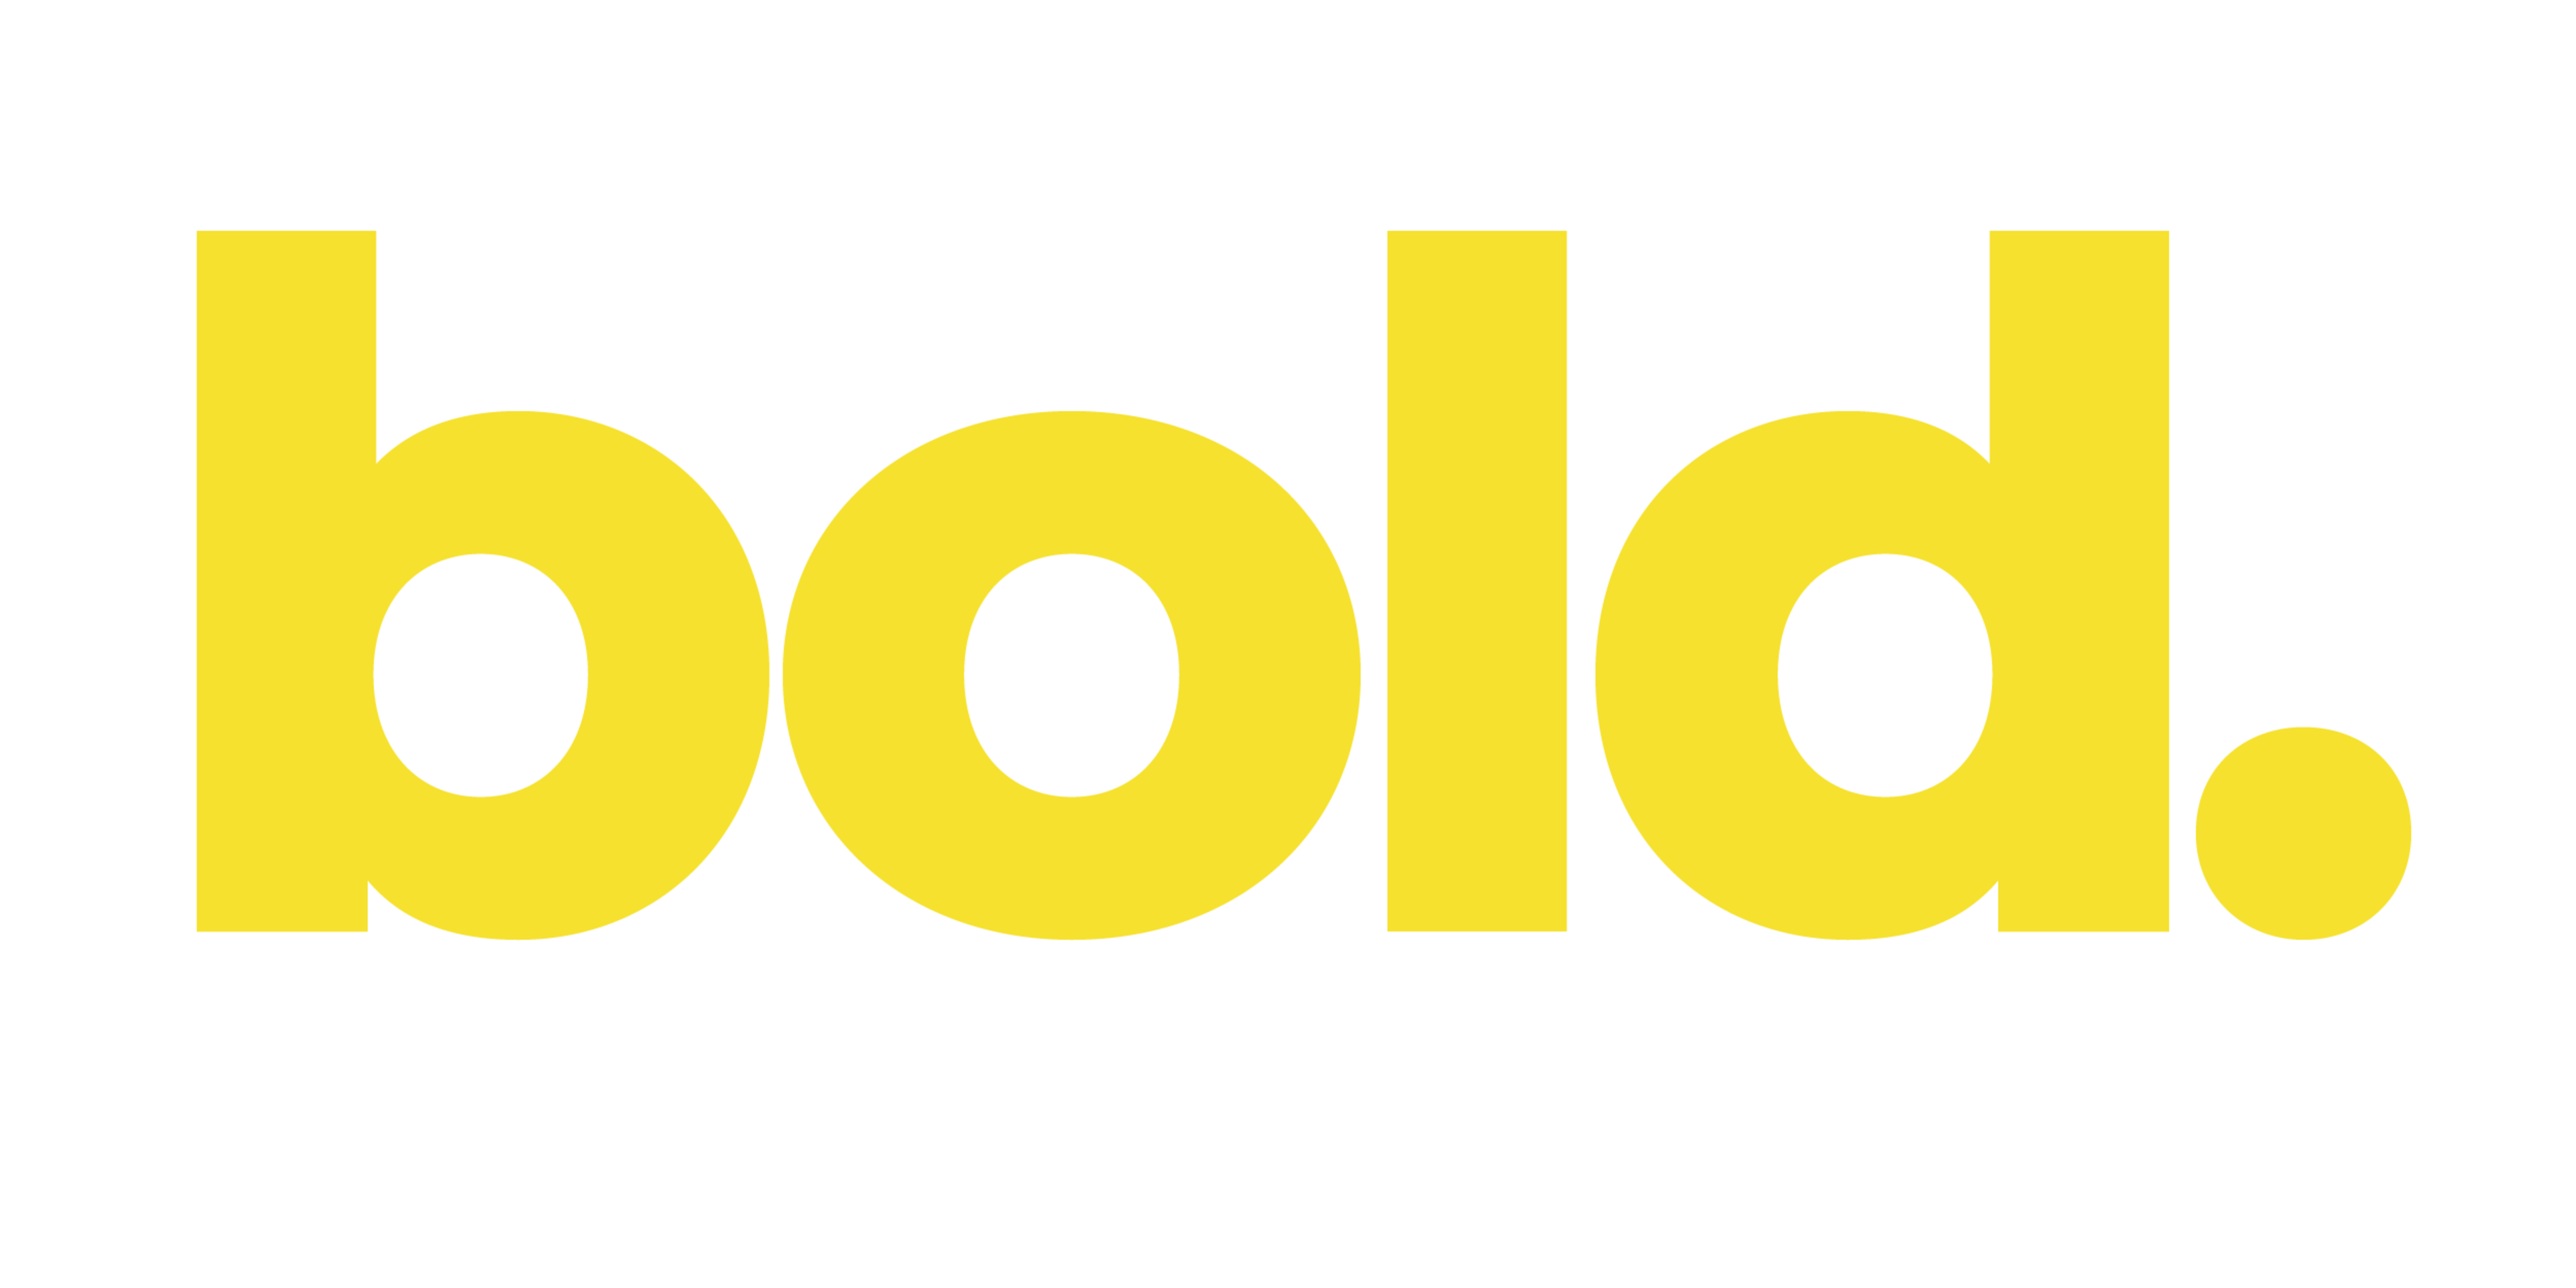 Bold's new logo